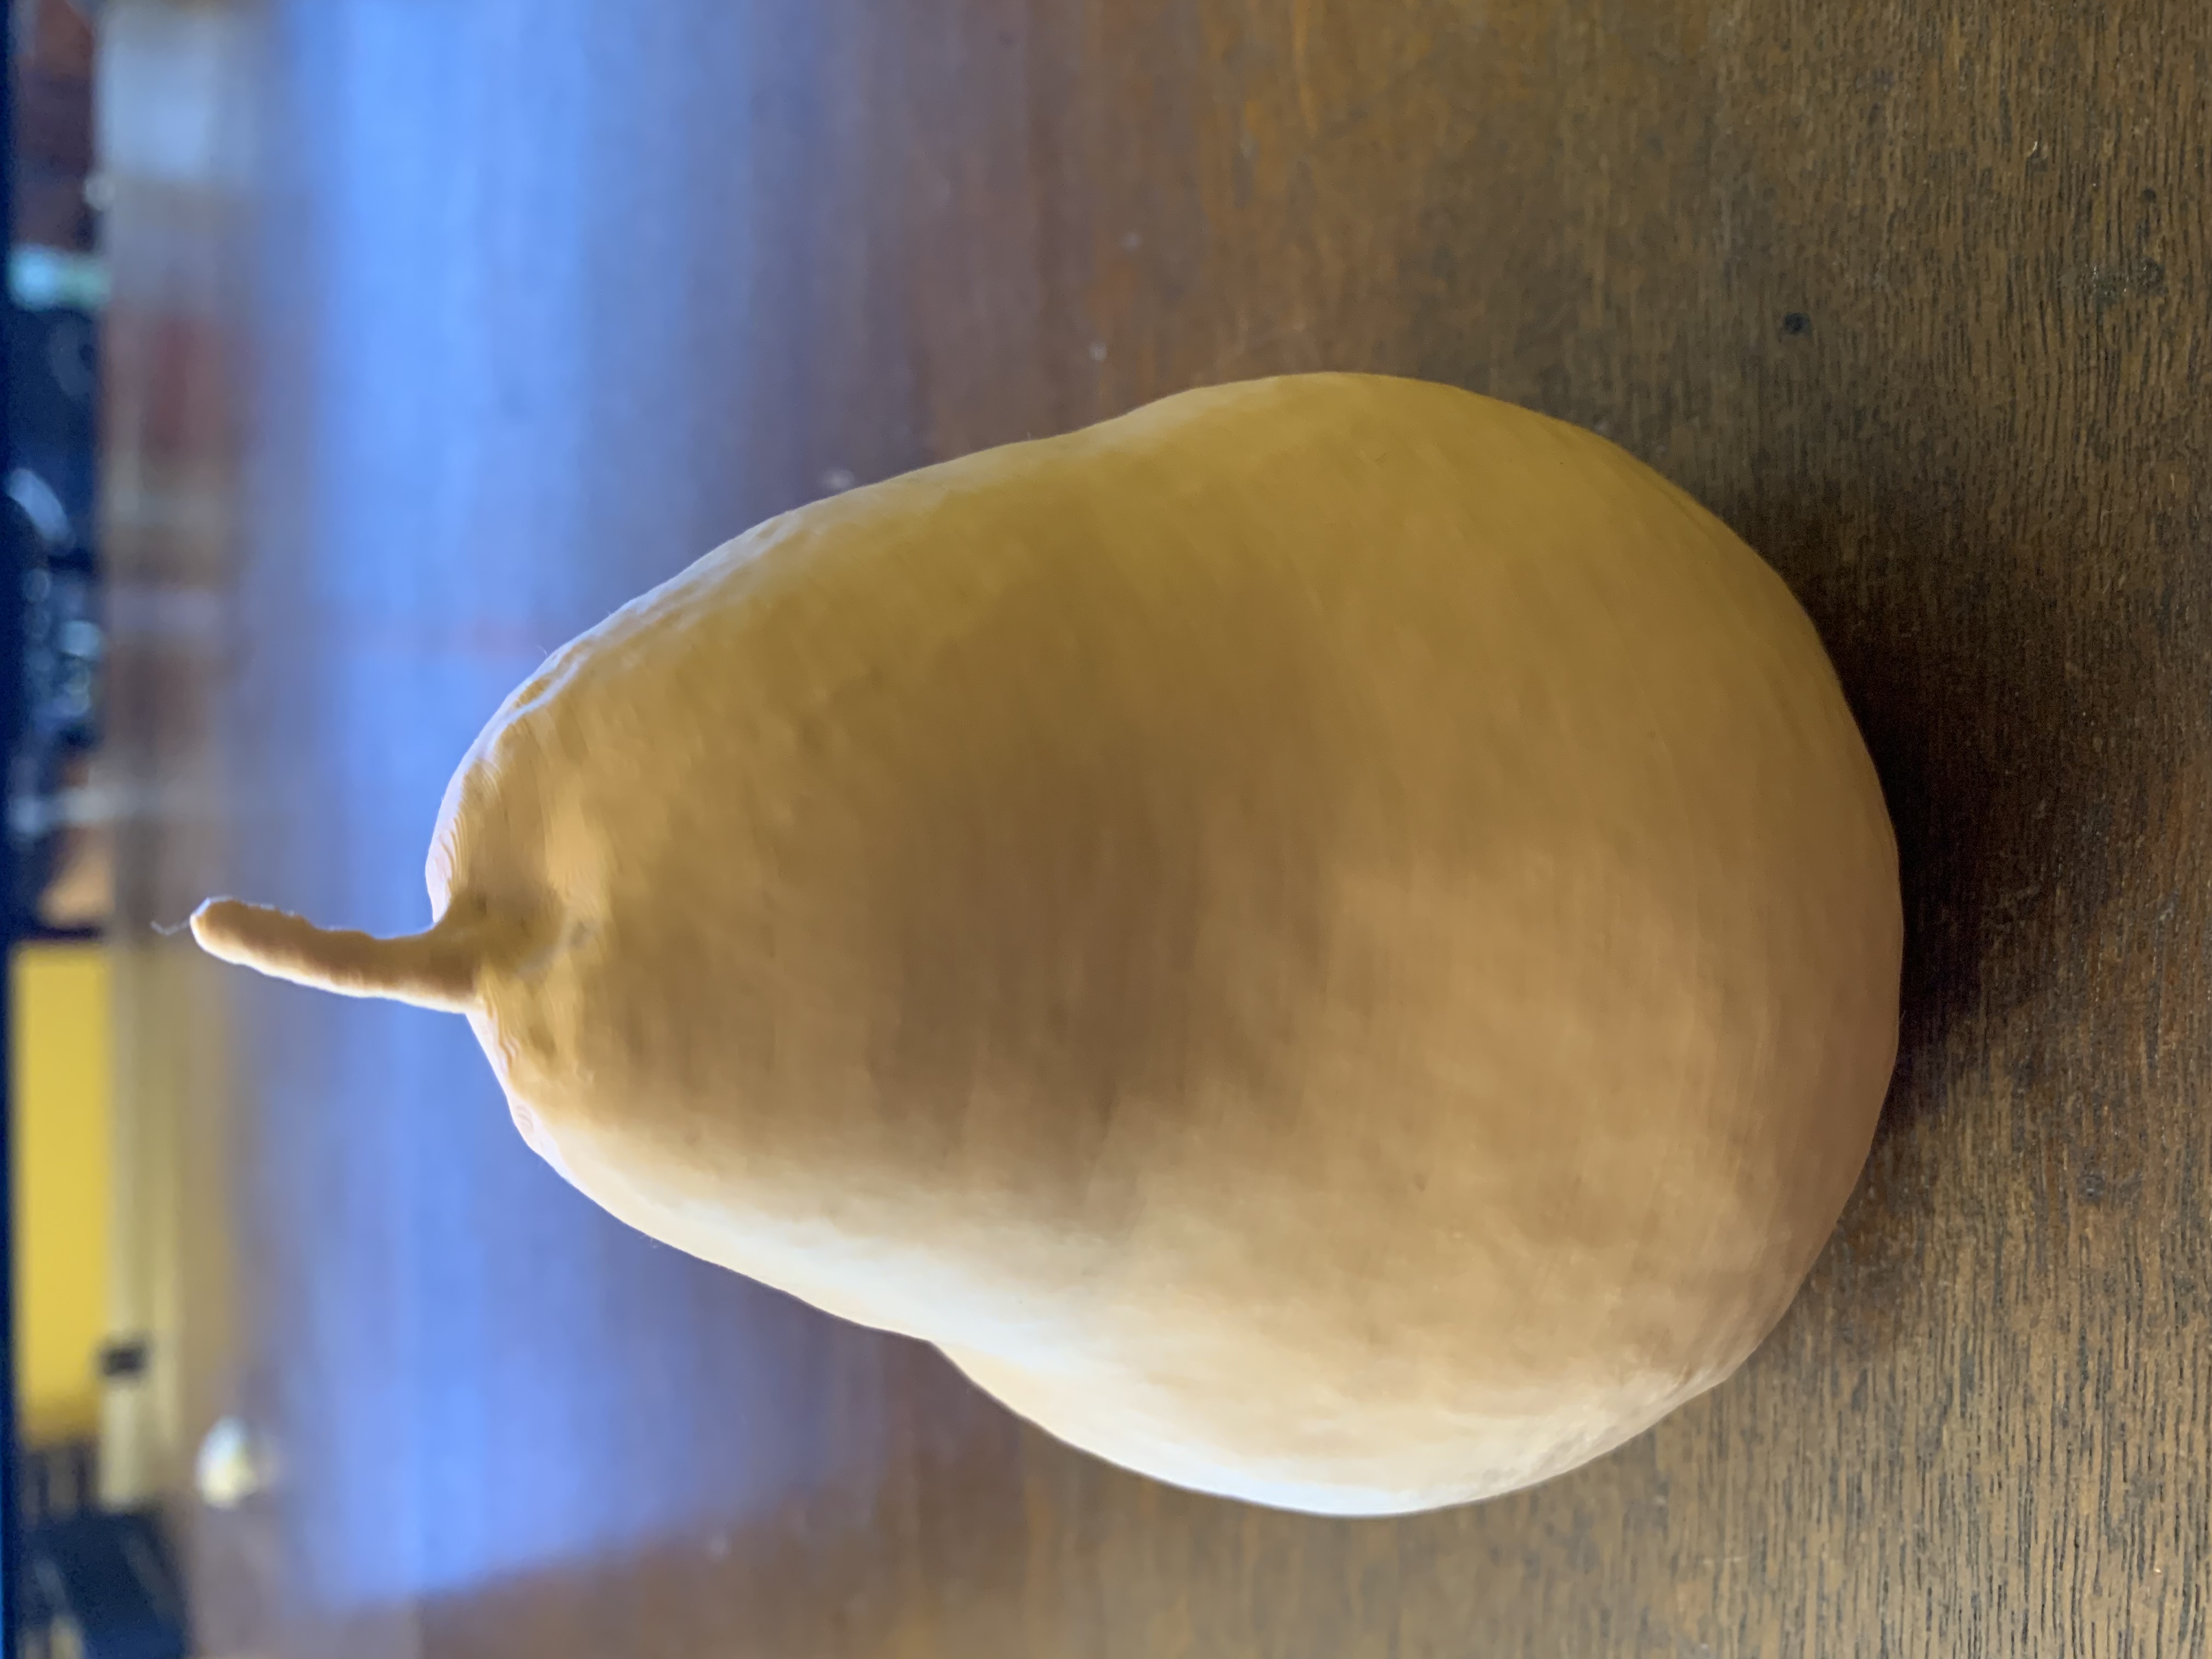 It's a pear!